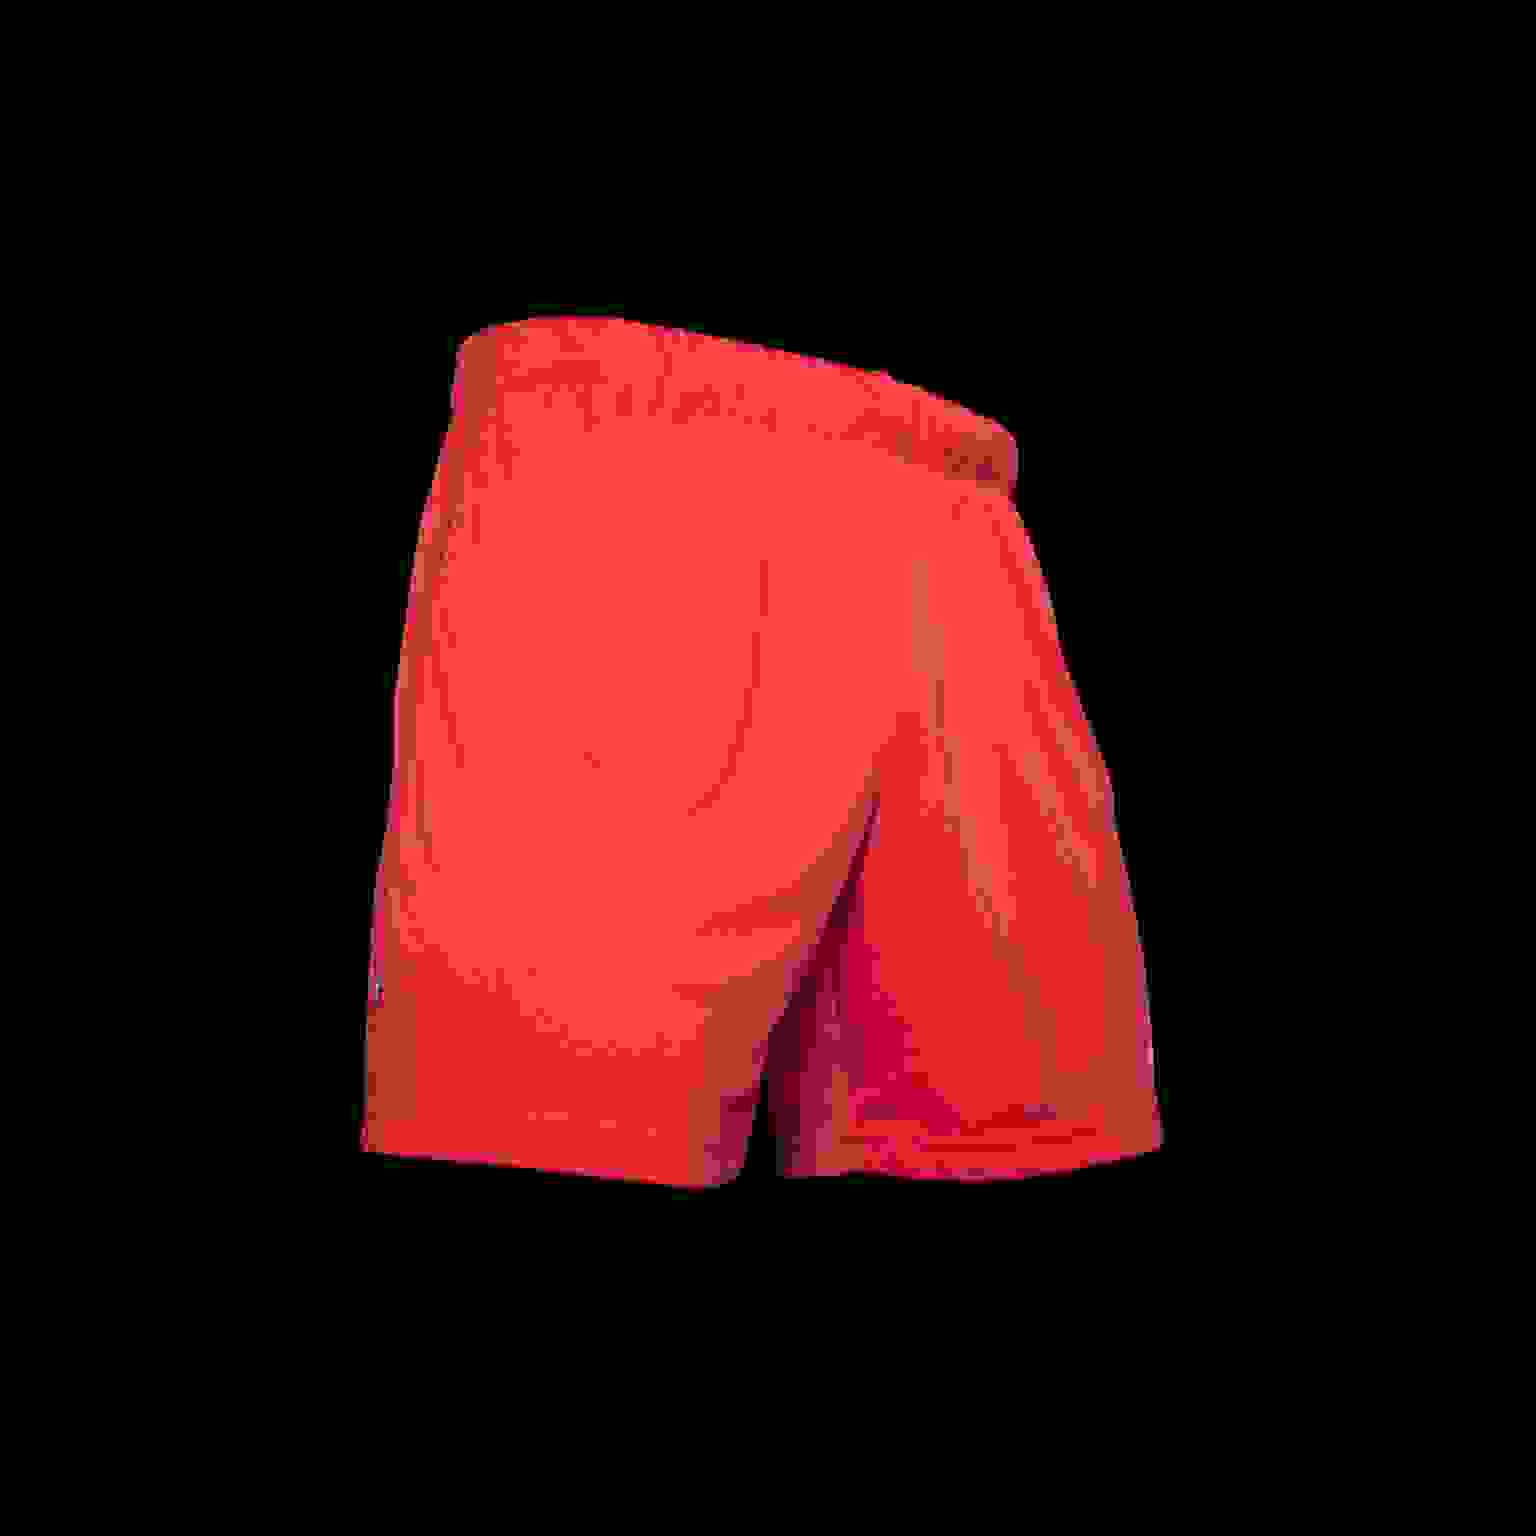 Core 22 Match Shorts